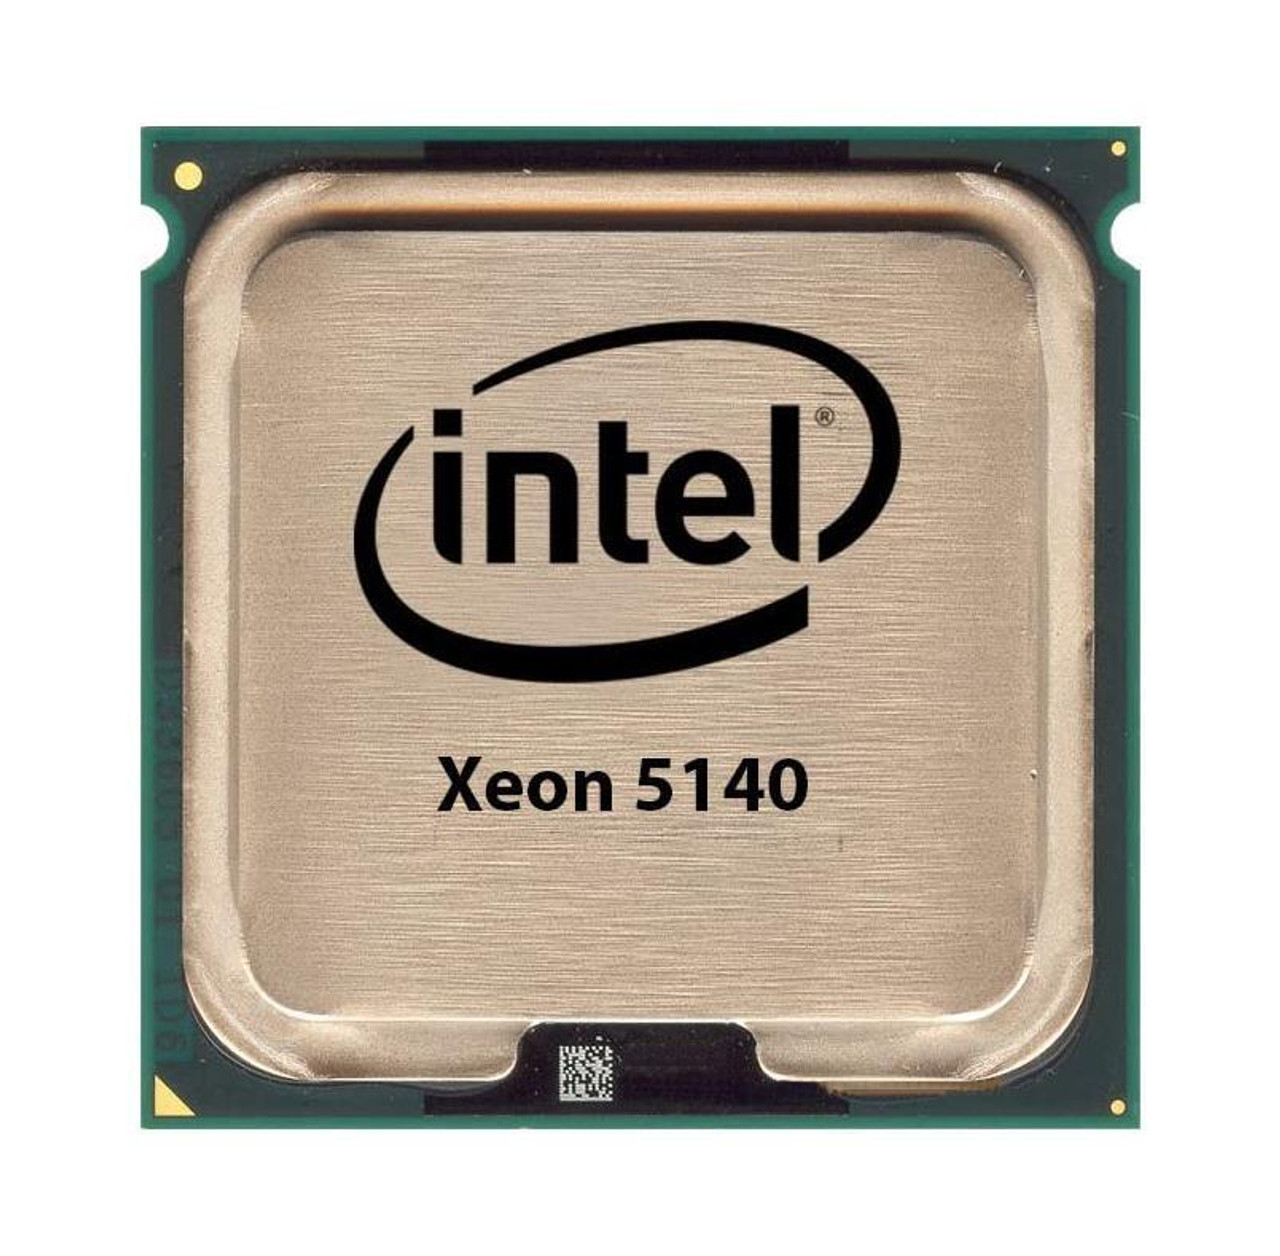 HPE 2.33GHz 1333MHz FSB 4MB L2 Cache Socket LGA771 Intel Xeon 5140 Dual-Core Processor Upgrade